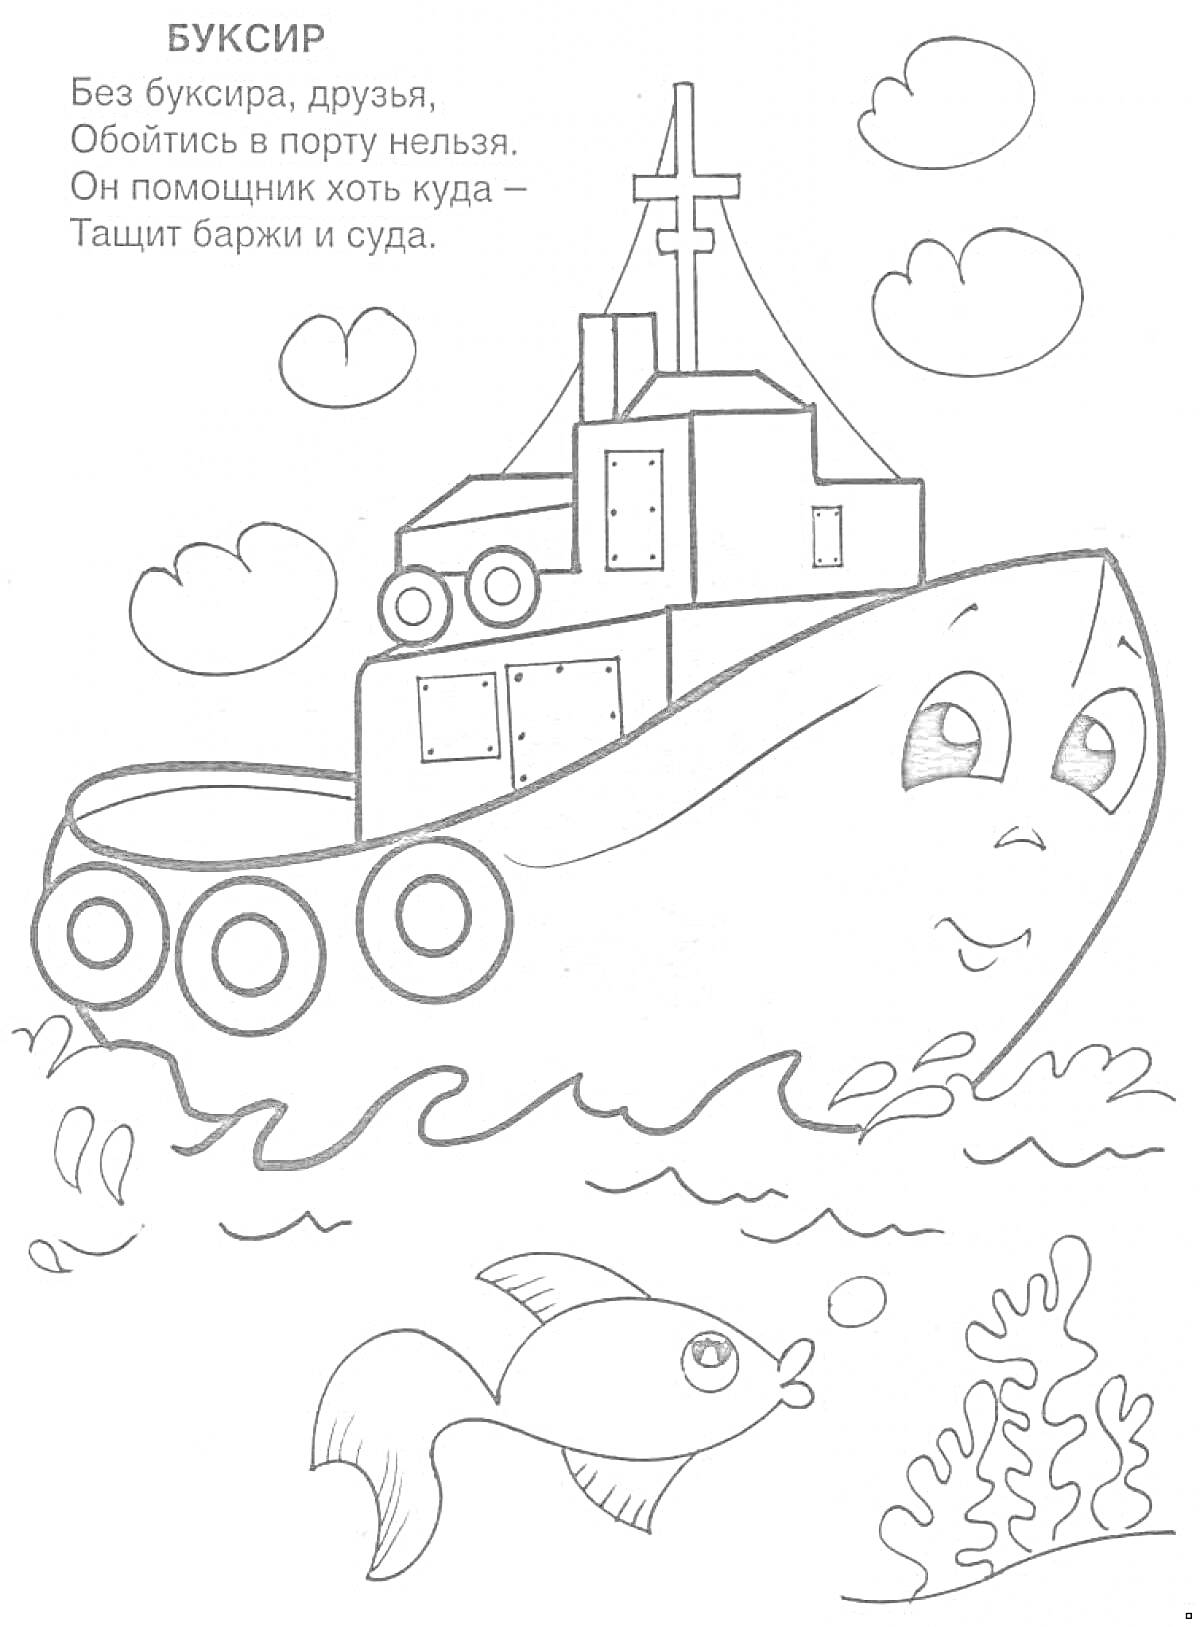 Раскраска Буксир со стихотворением, облаками, рыбкой и водорослями